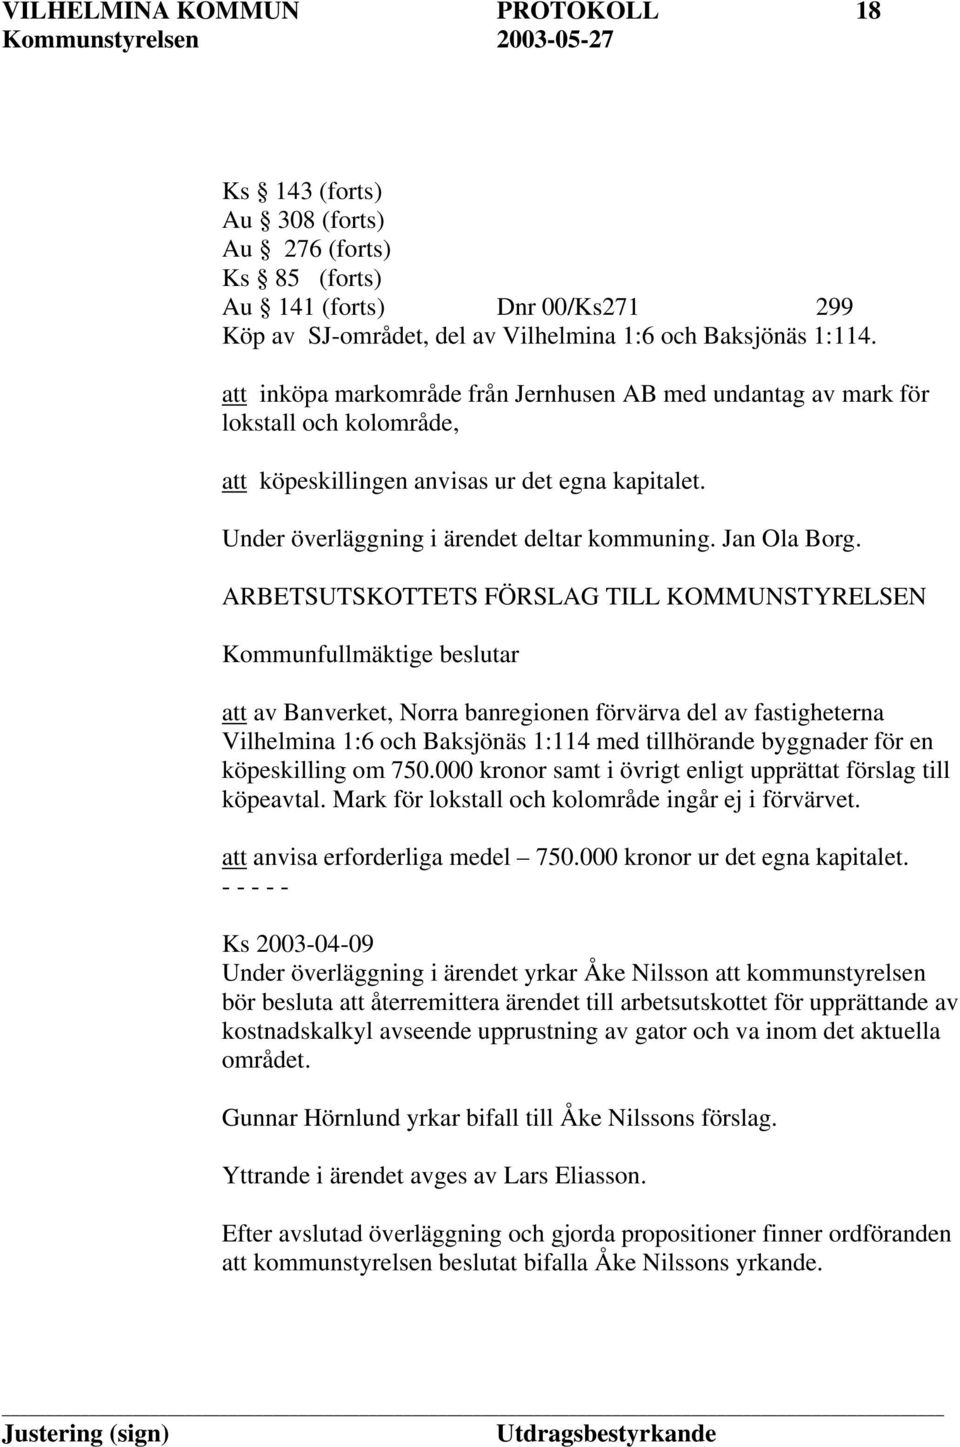 ARBETSUTSKOTTETS FÖRSLAG TILL KOMMUNSTYRELSEN Kommunfullmäktige beslutar att av Banverket, Norra banregionen förvärva del av fastigheterna Vilhelmina 1:6 och Baksjönäs 1:114 med tillhörande byggnader